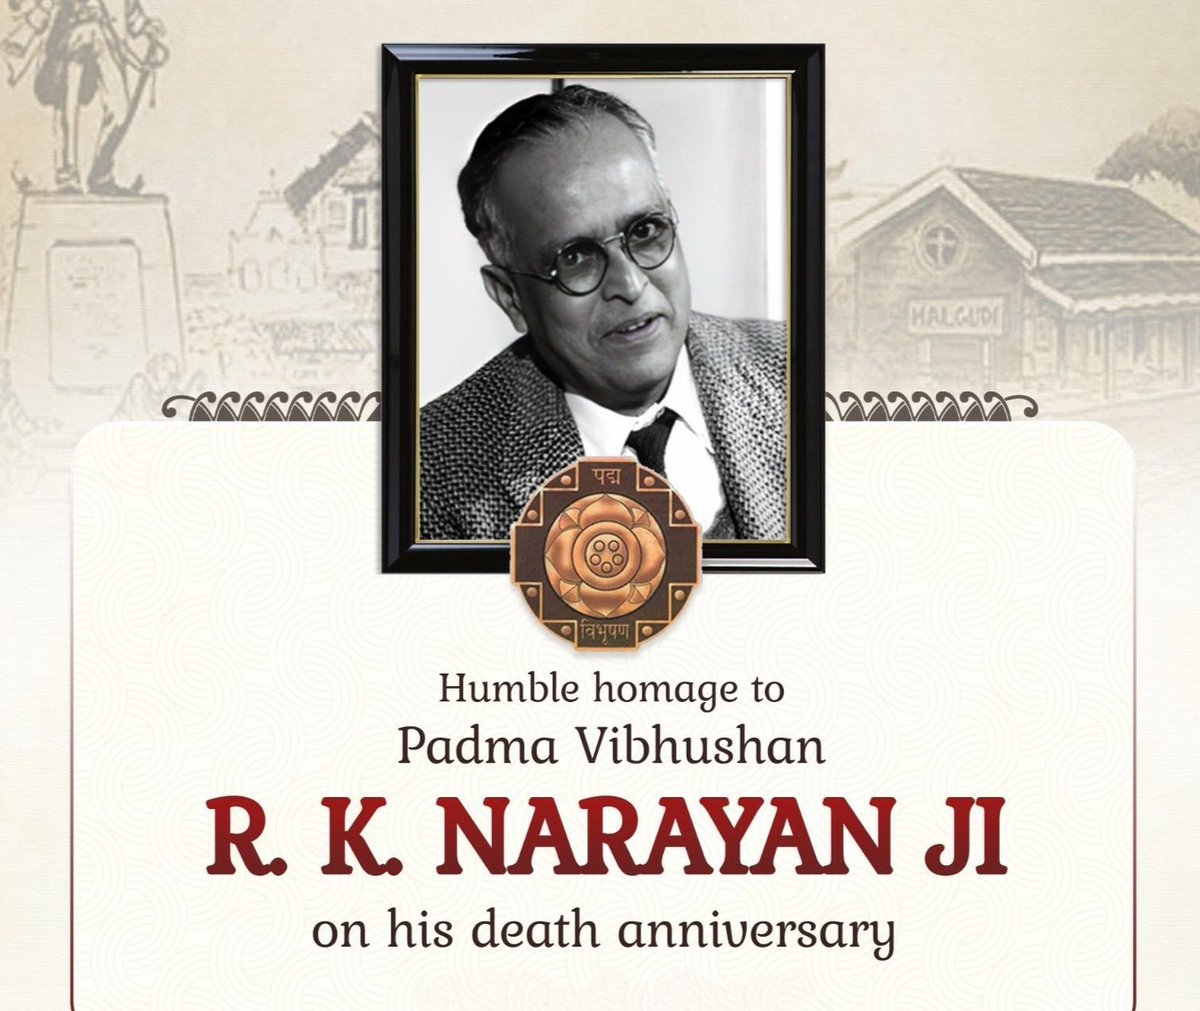 अंग्रेजी साहित्य के प्रसिद्ध भारतीय उपन्यासकार पद्म विभूषण से सम्मानित आर. के. नारायण जी के पुण्यतिथि पर शत्-शत् नमन।
#rknarayan
#आर_के_नारायण